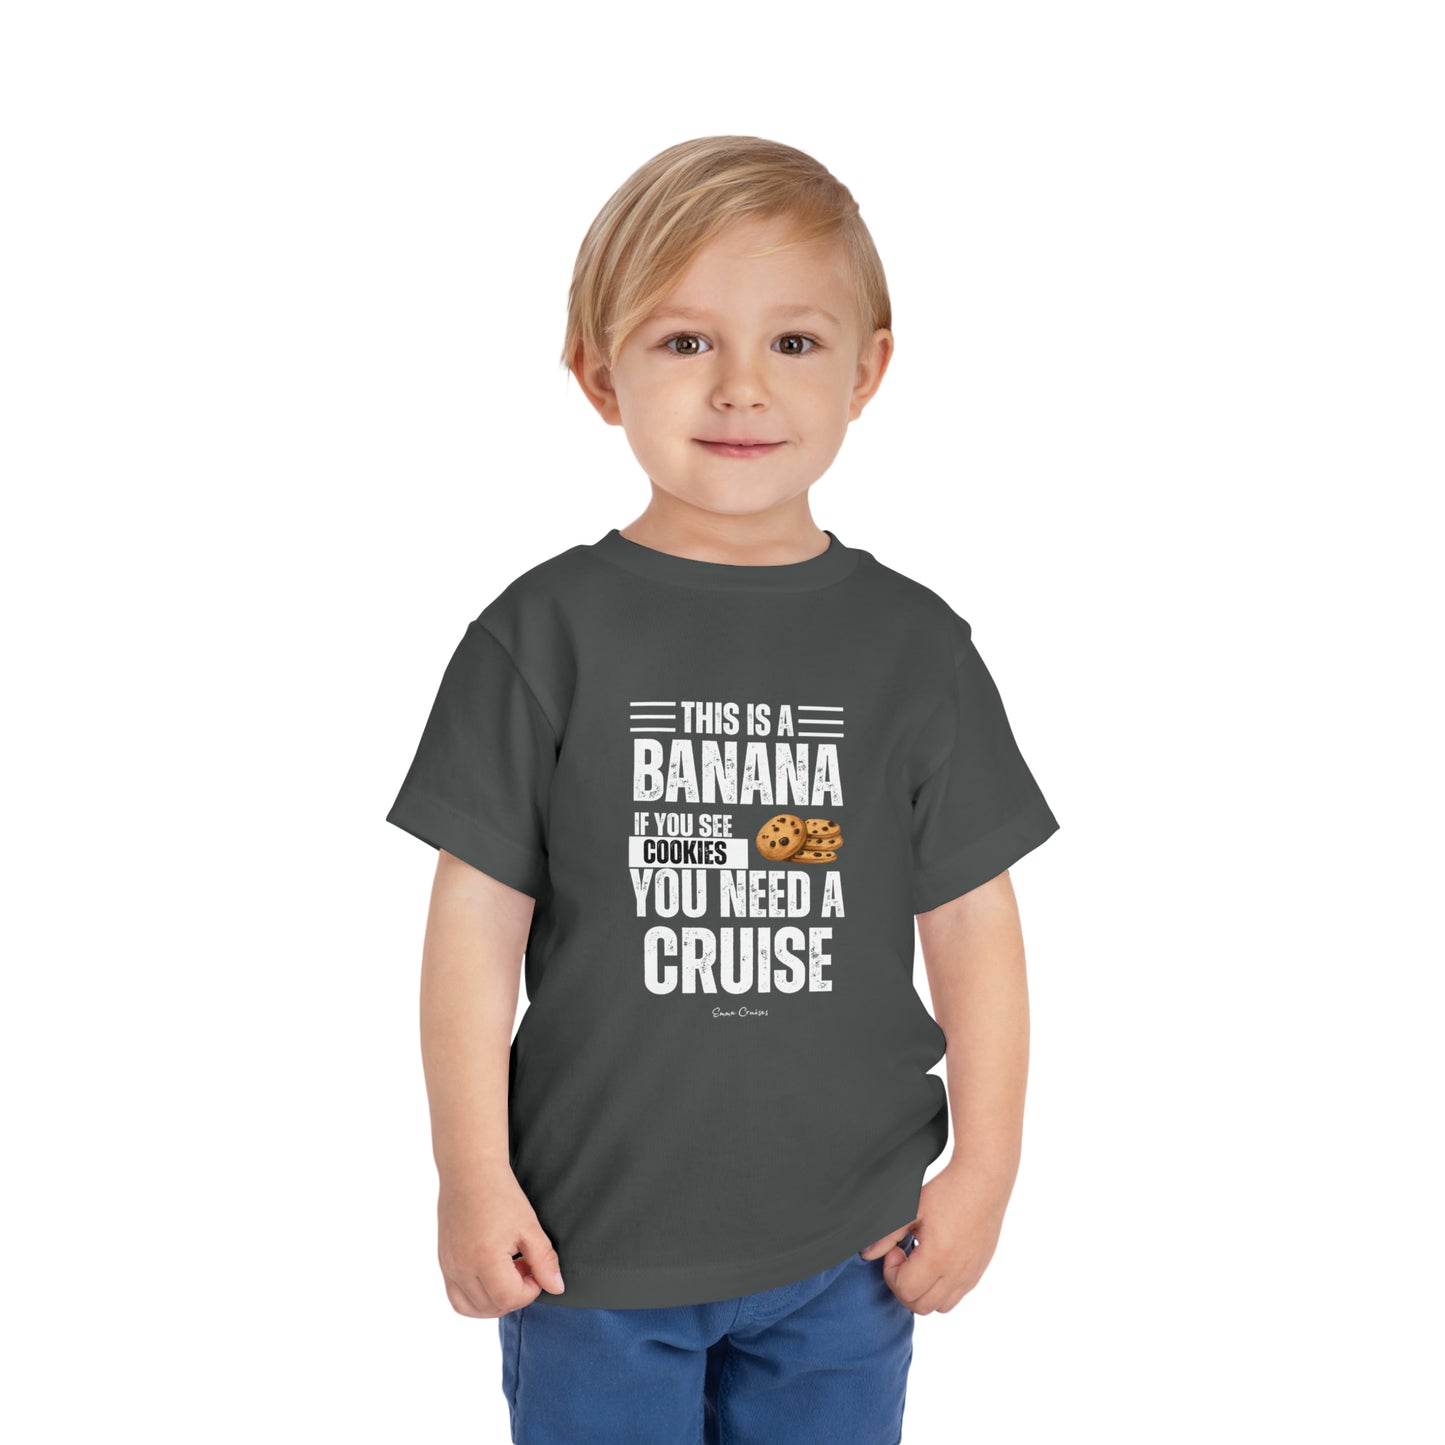 Si ves una galleta - Camiseta UNISEX para niños pequeños 